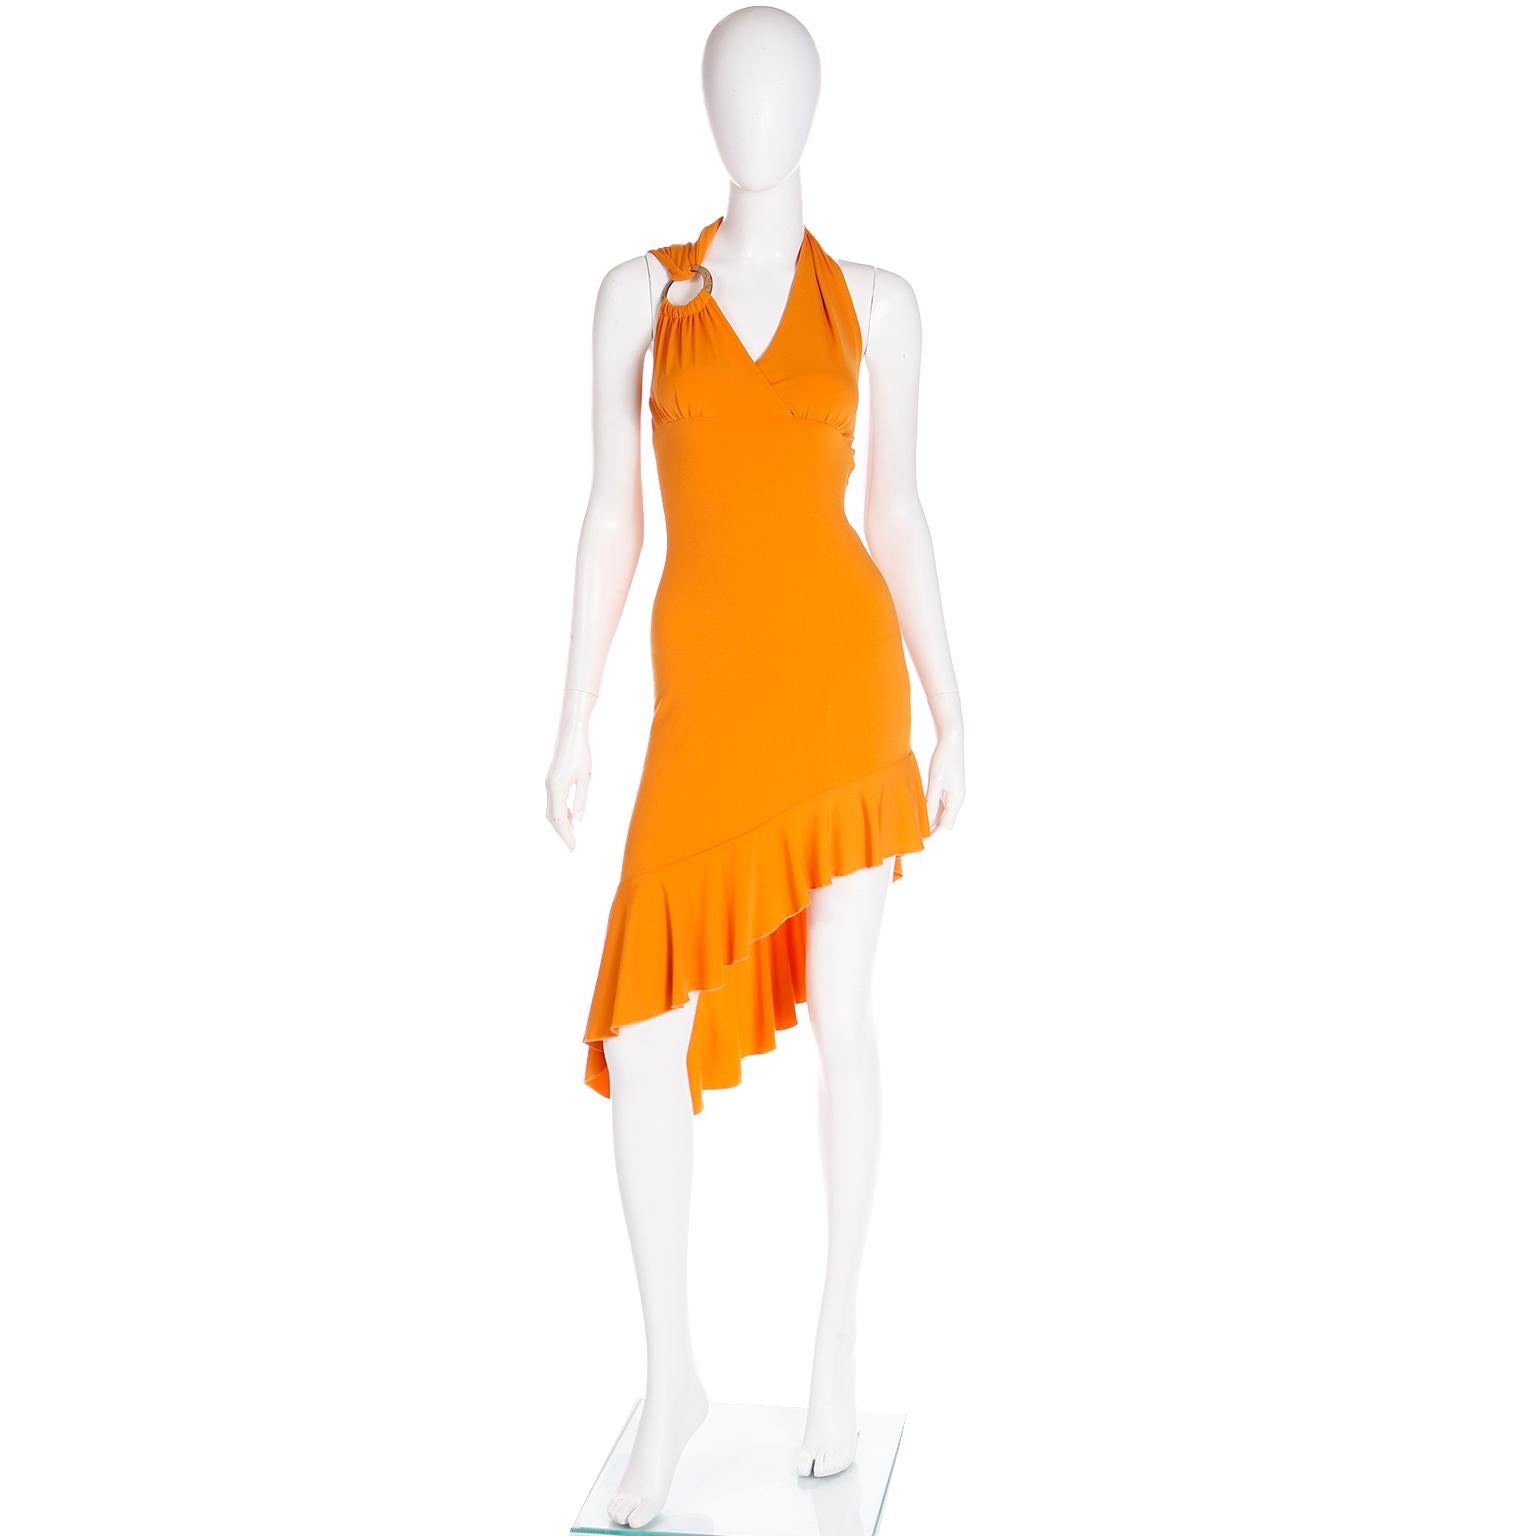 Nous pensons que cette incroyable robe orange vintage de Gianni Versace est un excellent exemple de la mode de l'an 2000 ! Cette robe Versace est un stock mort avec son étiquette d'origine attachée et elle a tellement de style sans effort !
Cette